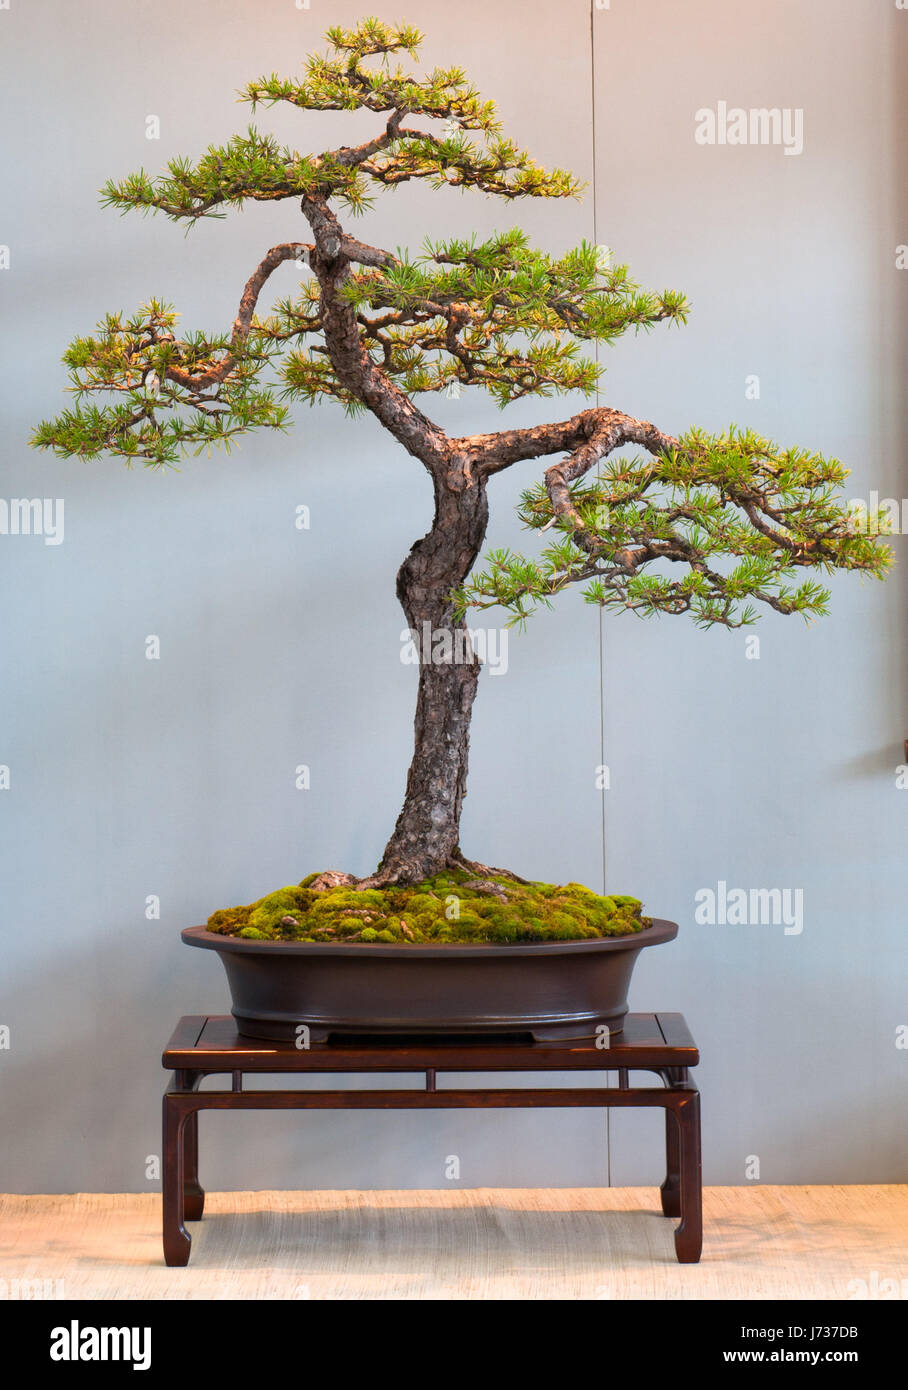 scots pine as bonsai Stock Photo